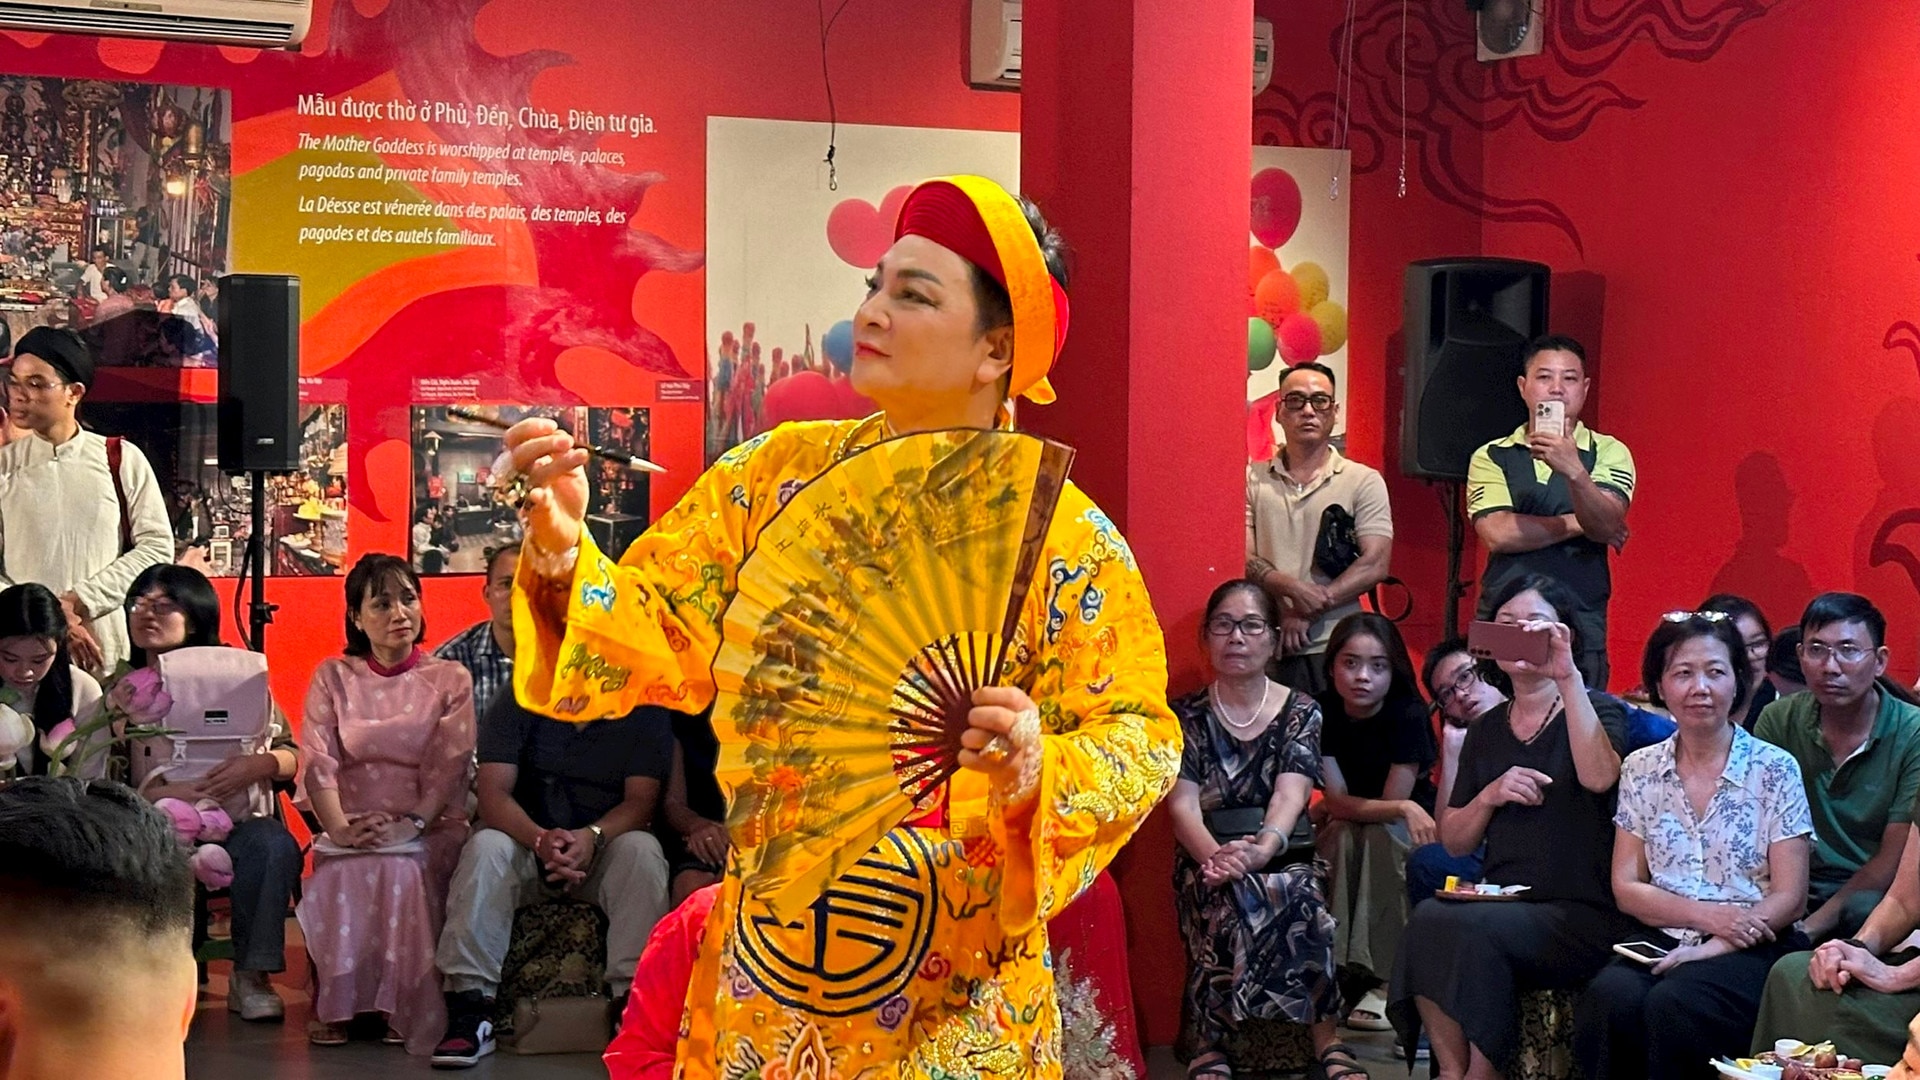 Trải nghiệm văn hóa Tín ngưỡng thờ Mẫu tại Bảo tàng Phụ nữ Việt Nam - Ảnh 4.